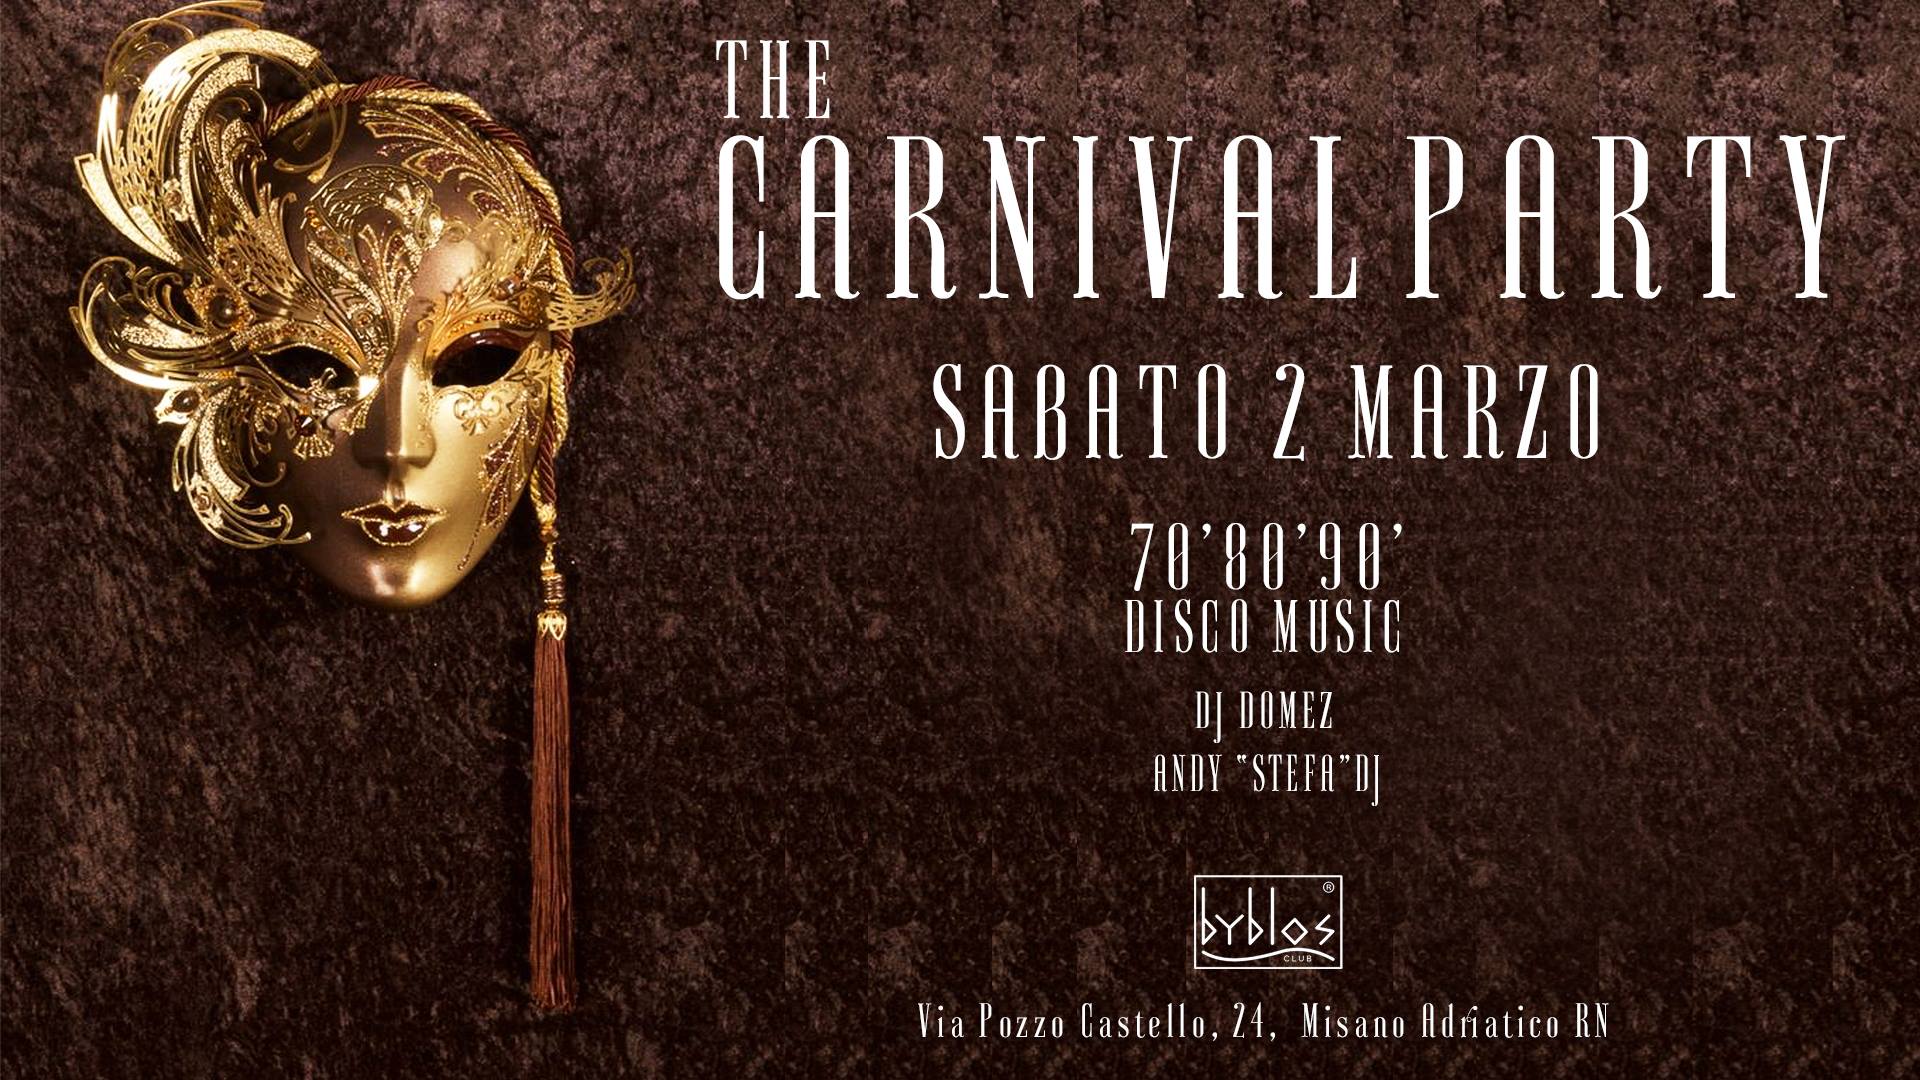 Carnevale Byblos Club Riccione